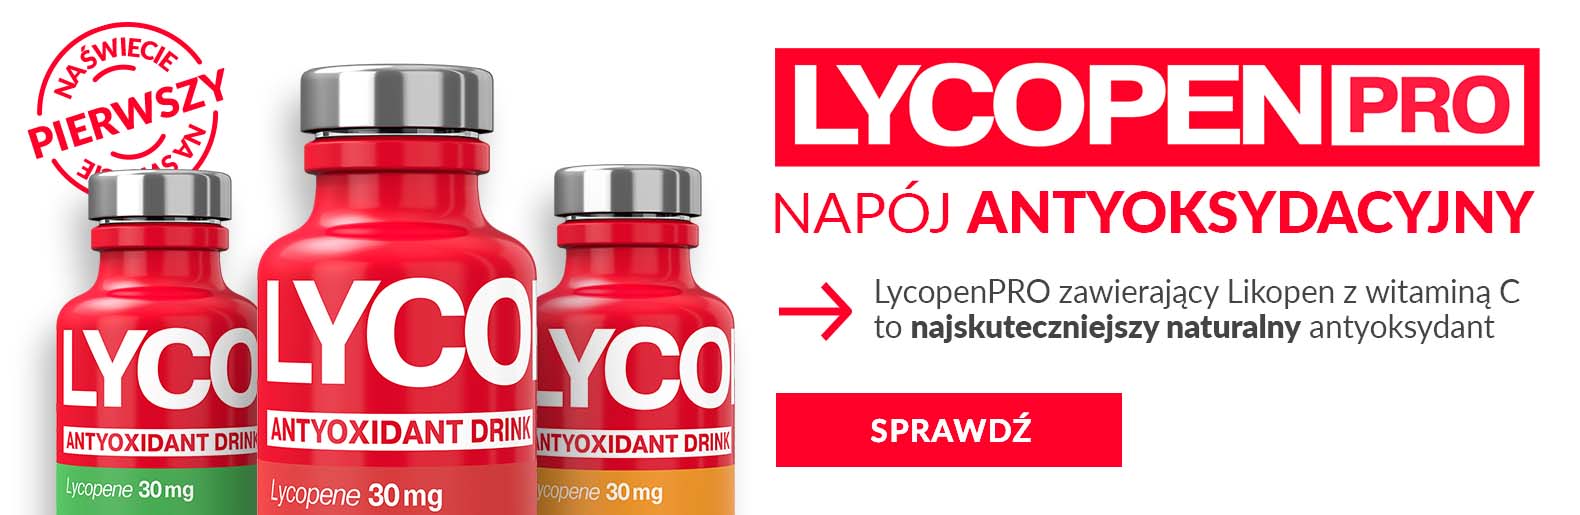 Lycopen pro suplementy diety